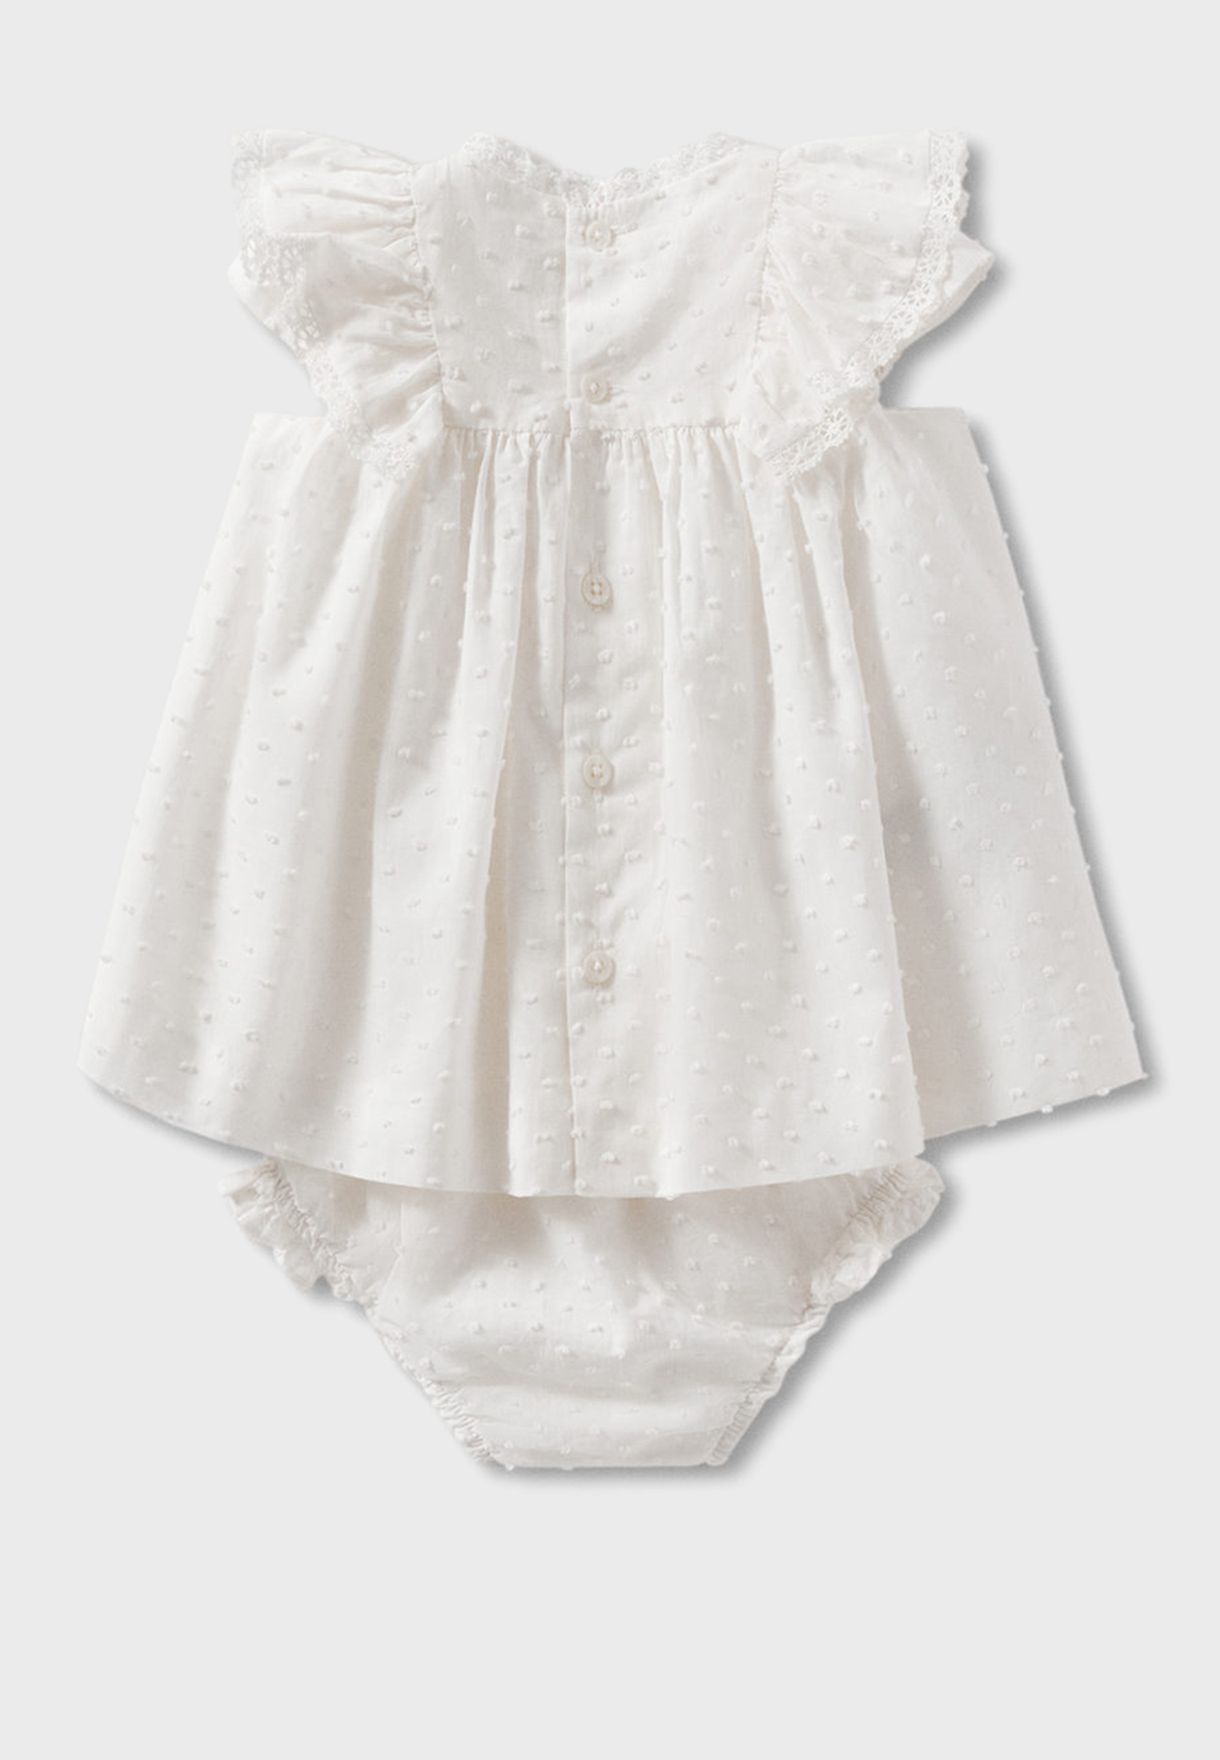 Infant Embroidered Dress & Shorts Set